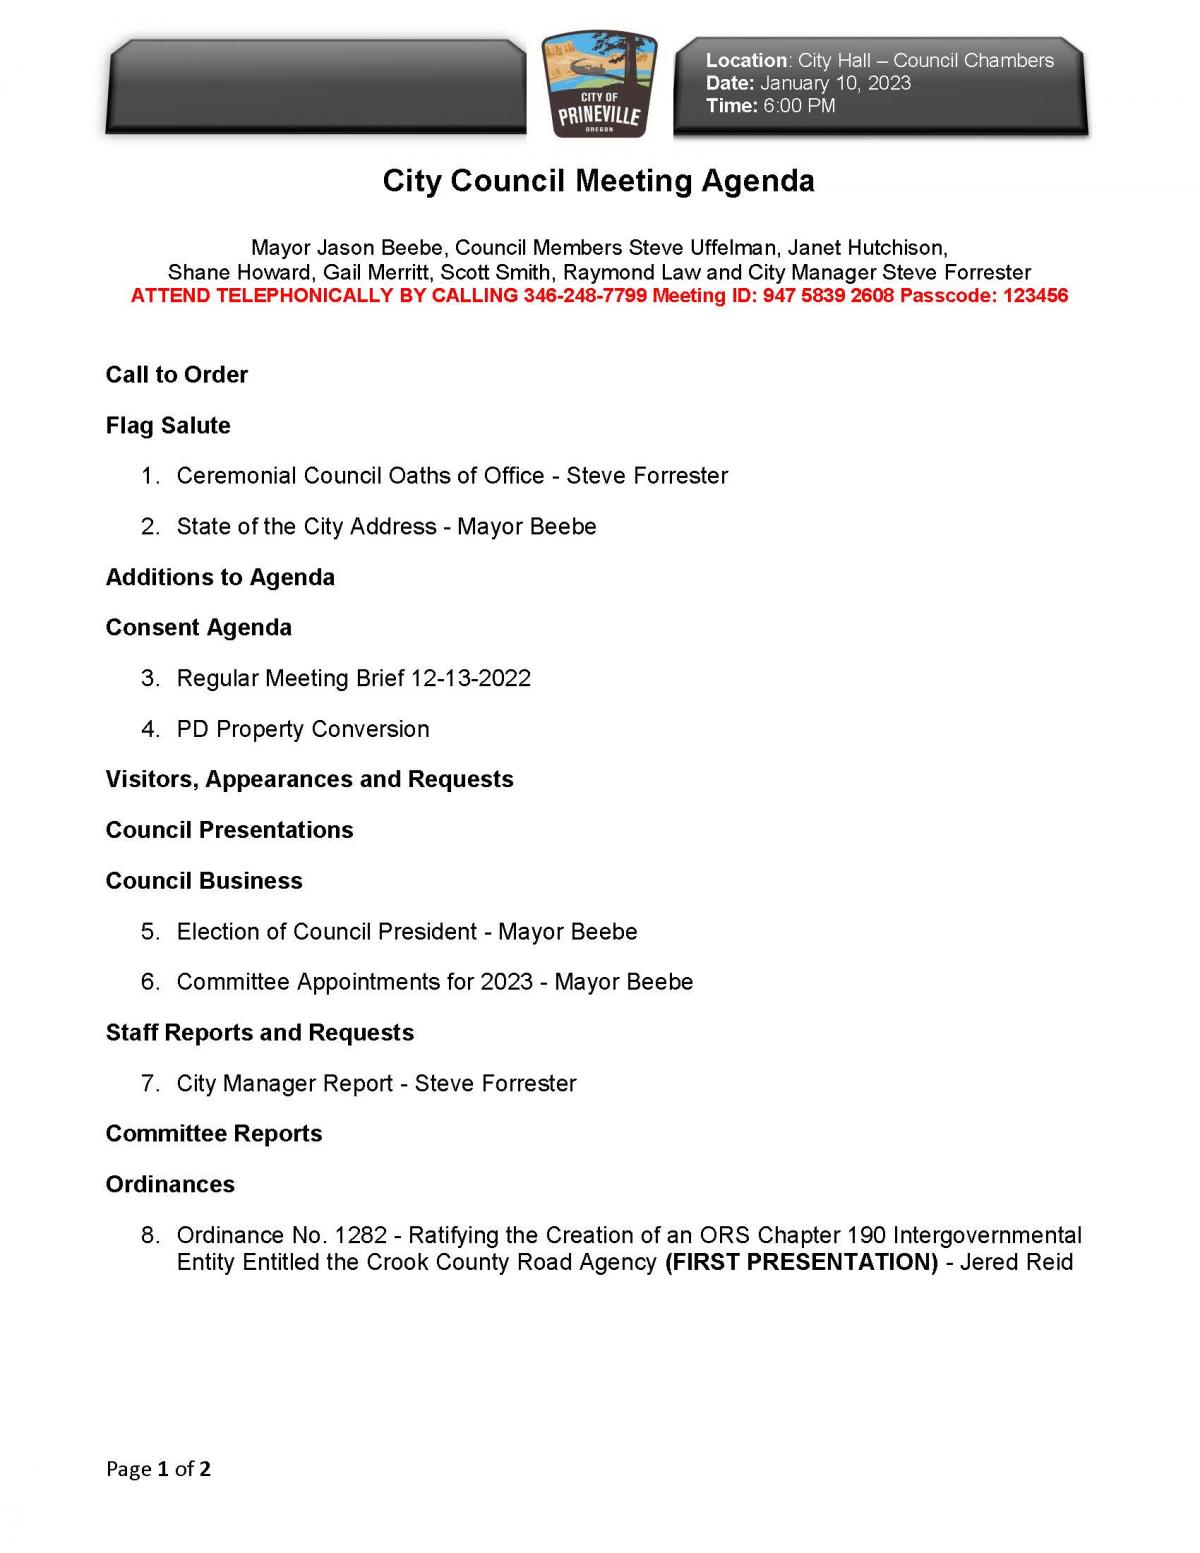 Council Agenda page 1